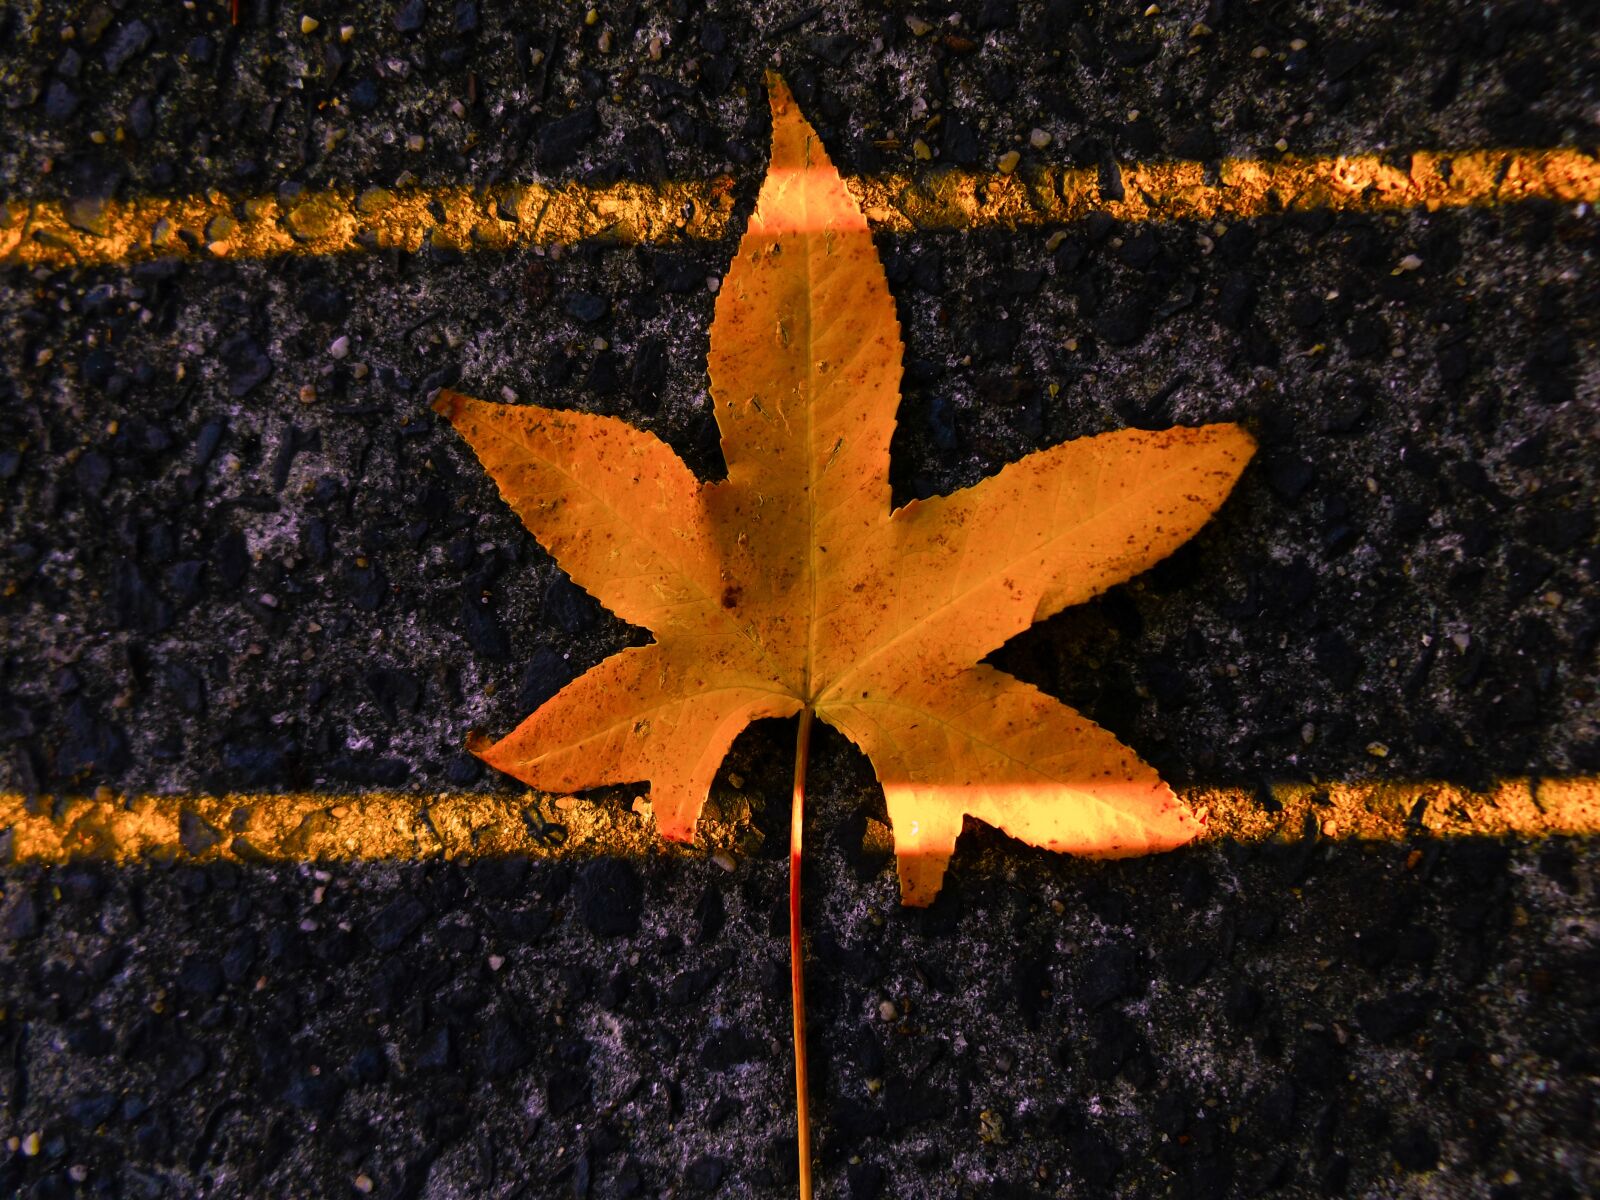 Fujifilm FinePix S8600 sample photo. Fall, autumn, leaf photography